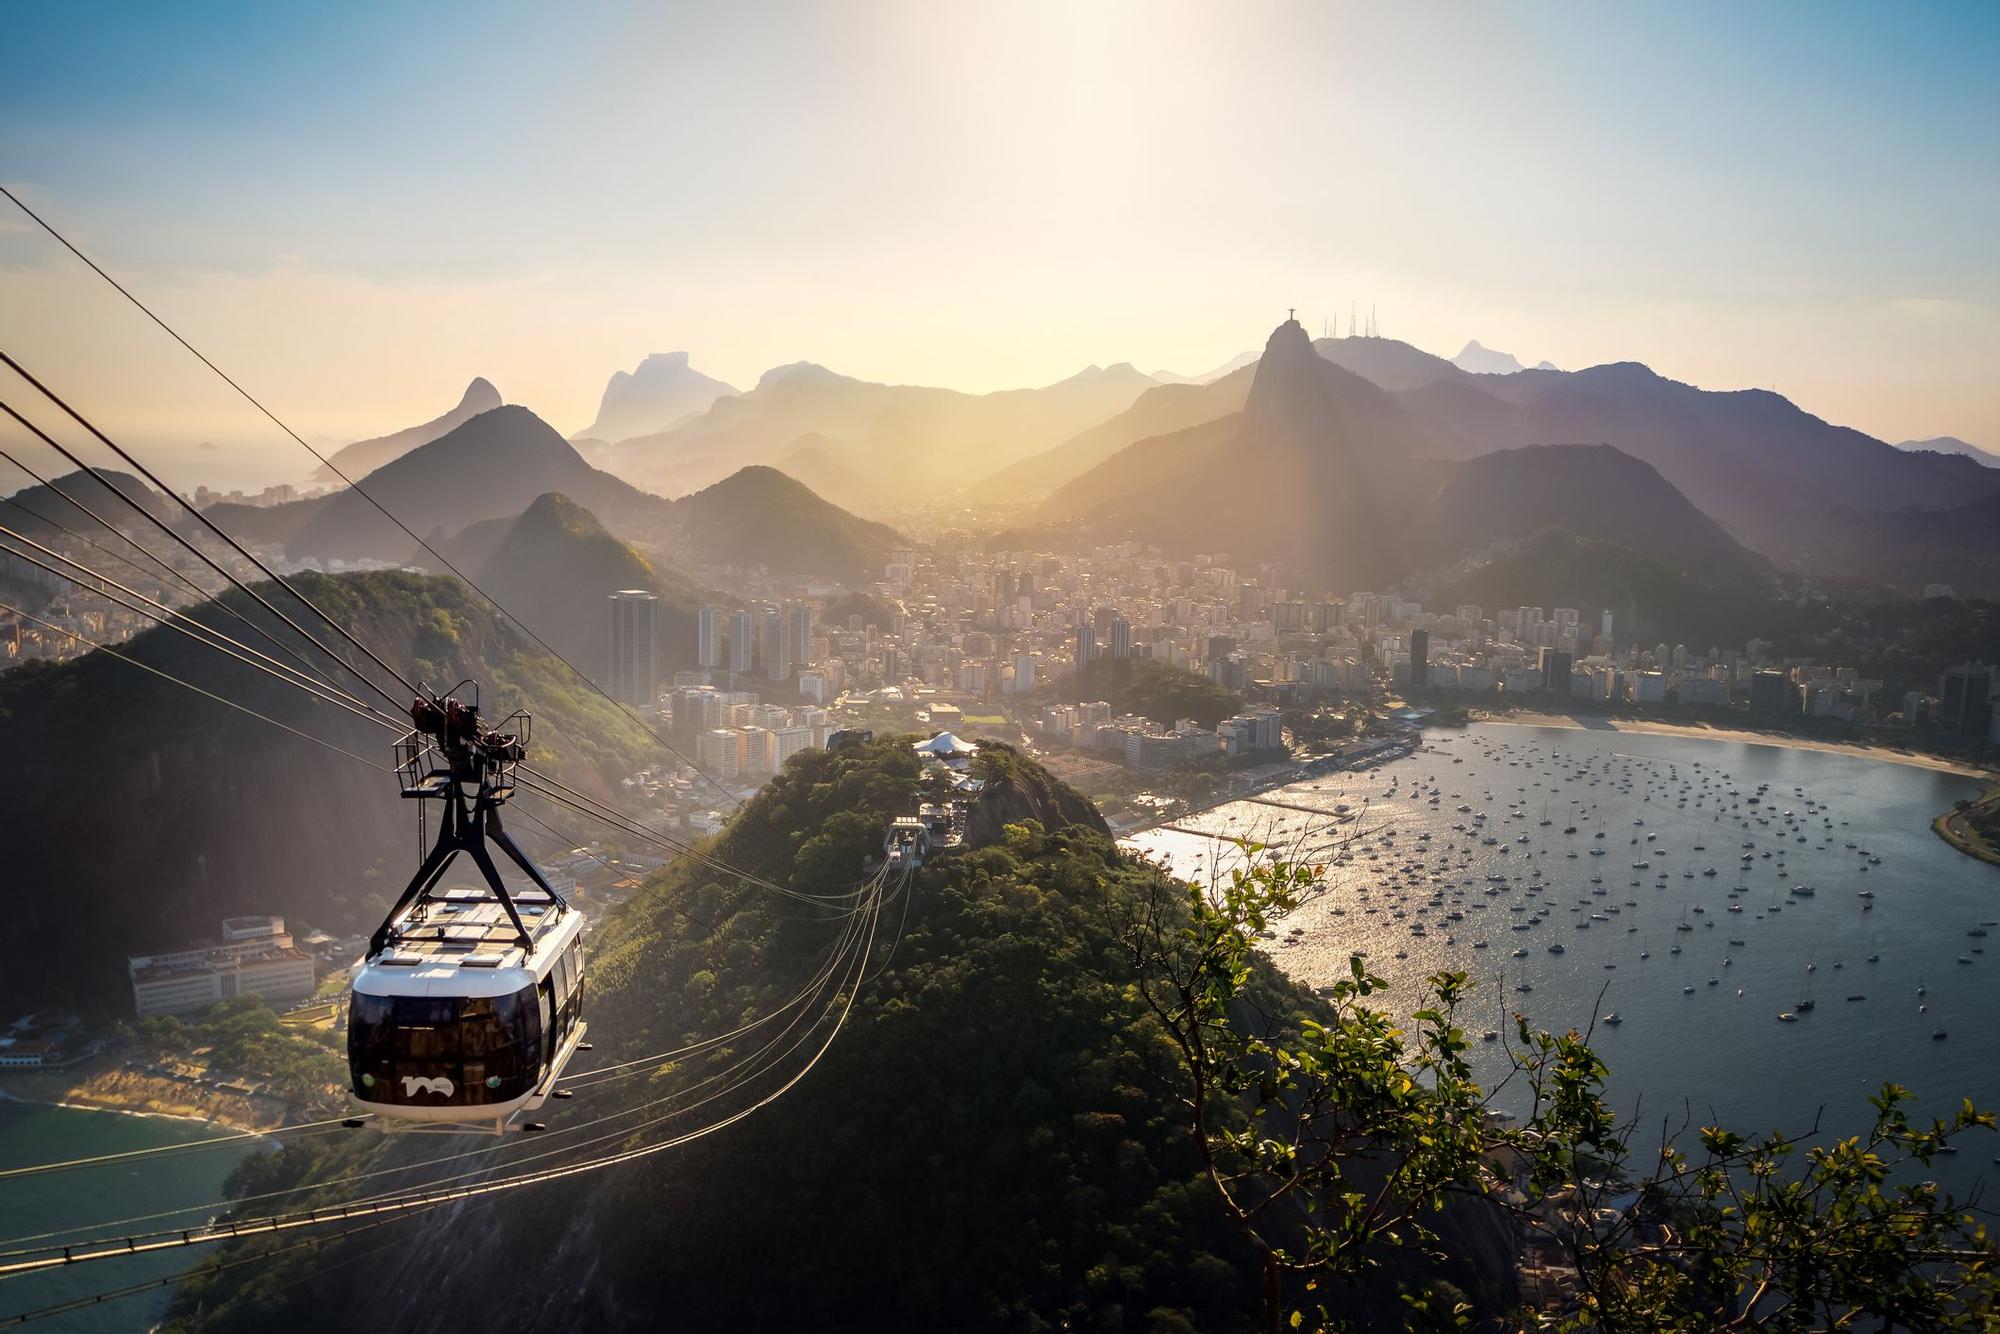 La próxima Expedición VIAJAR a Sudamérica pasará por Río de Janeiro y su famoso Pan de Azúcar.